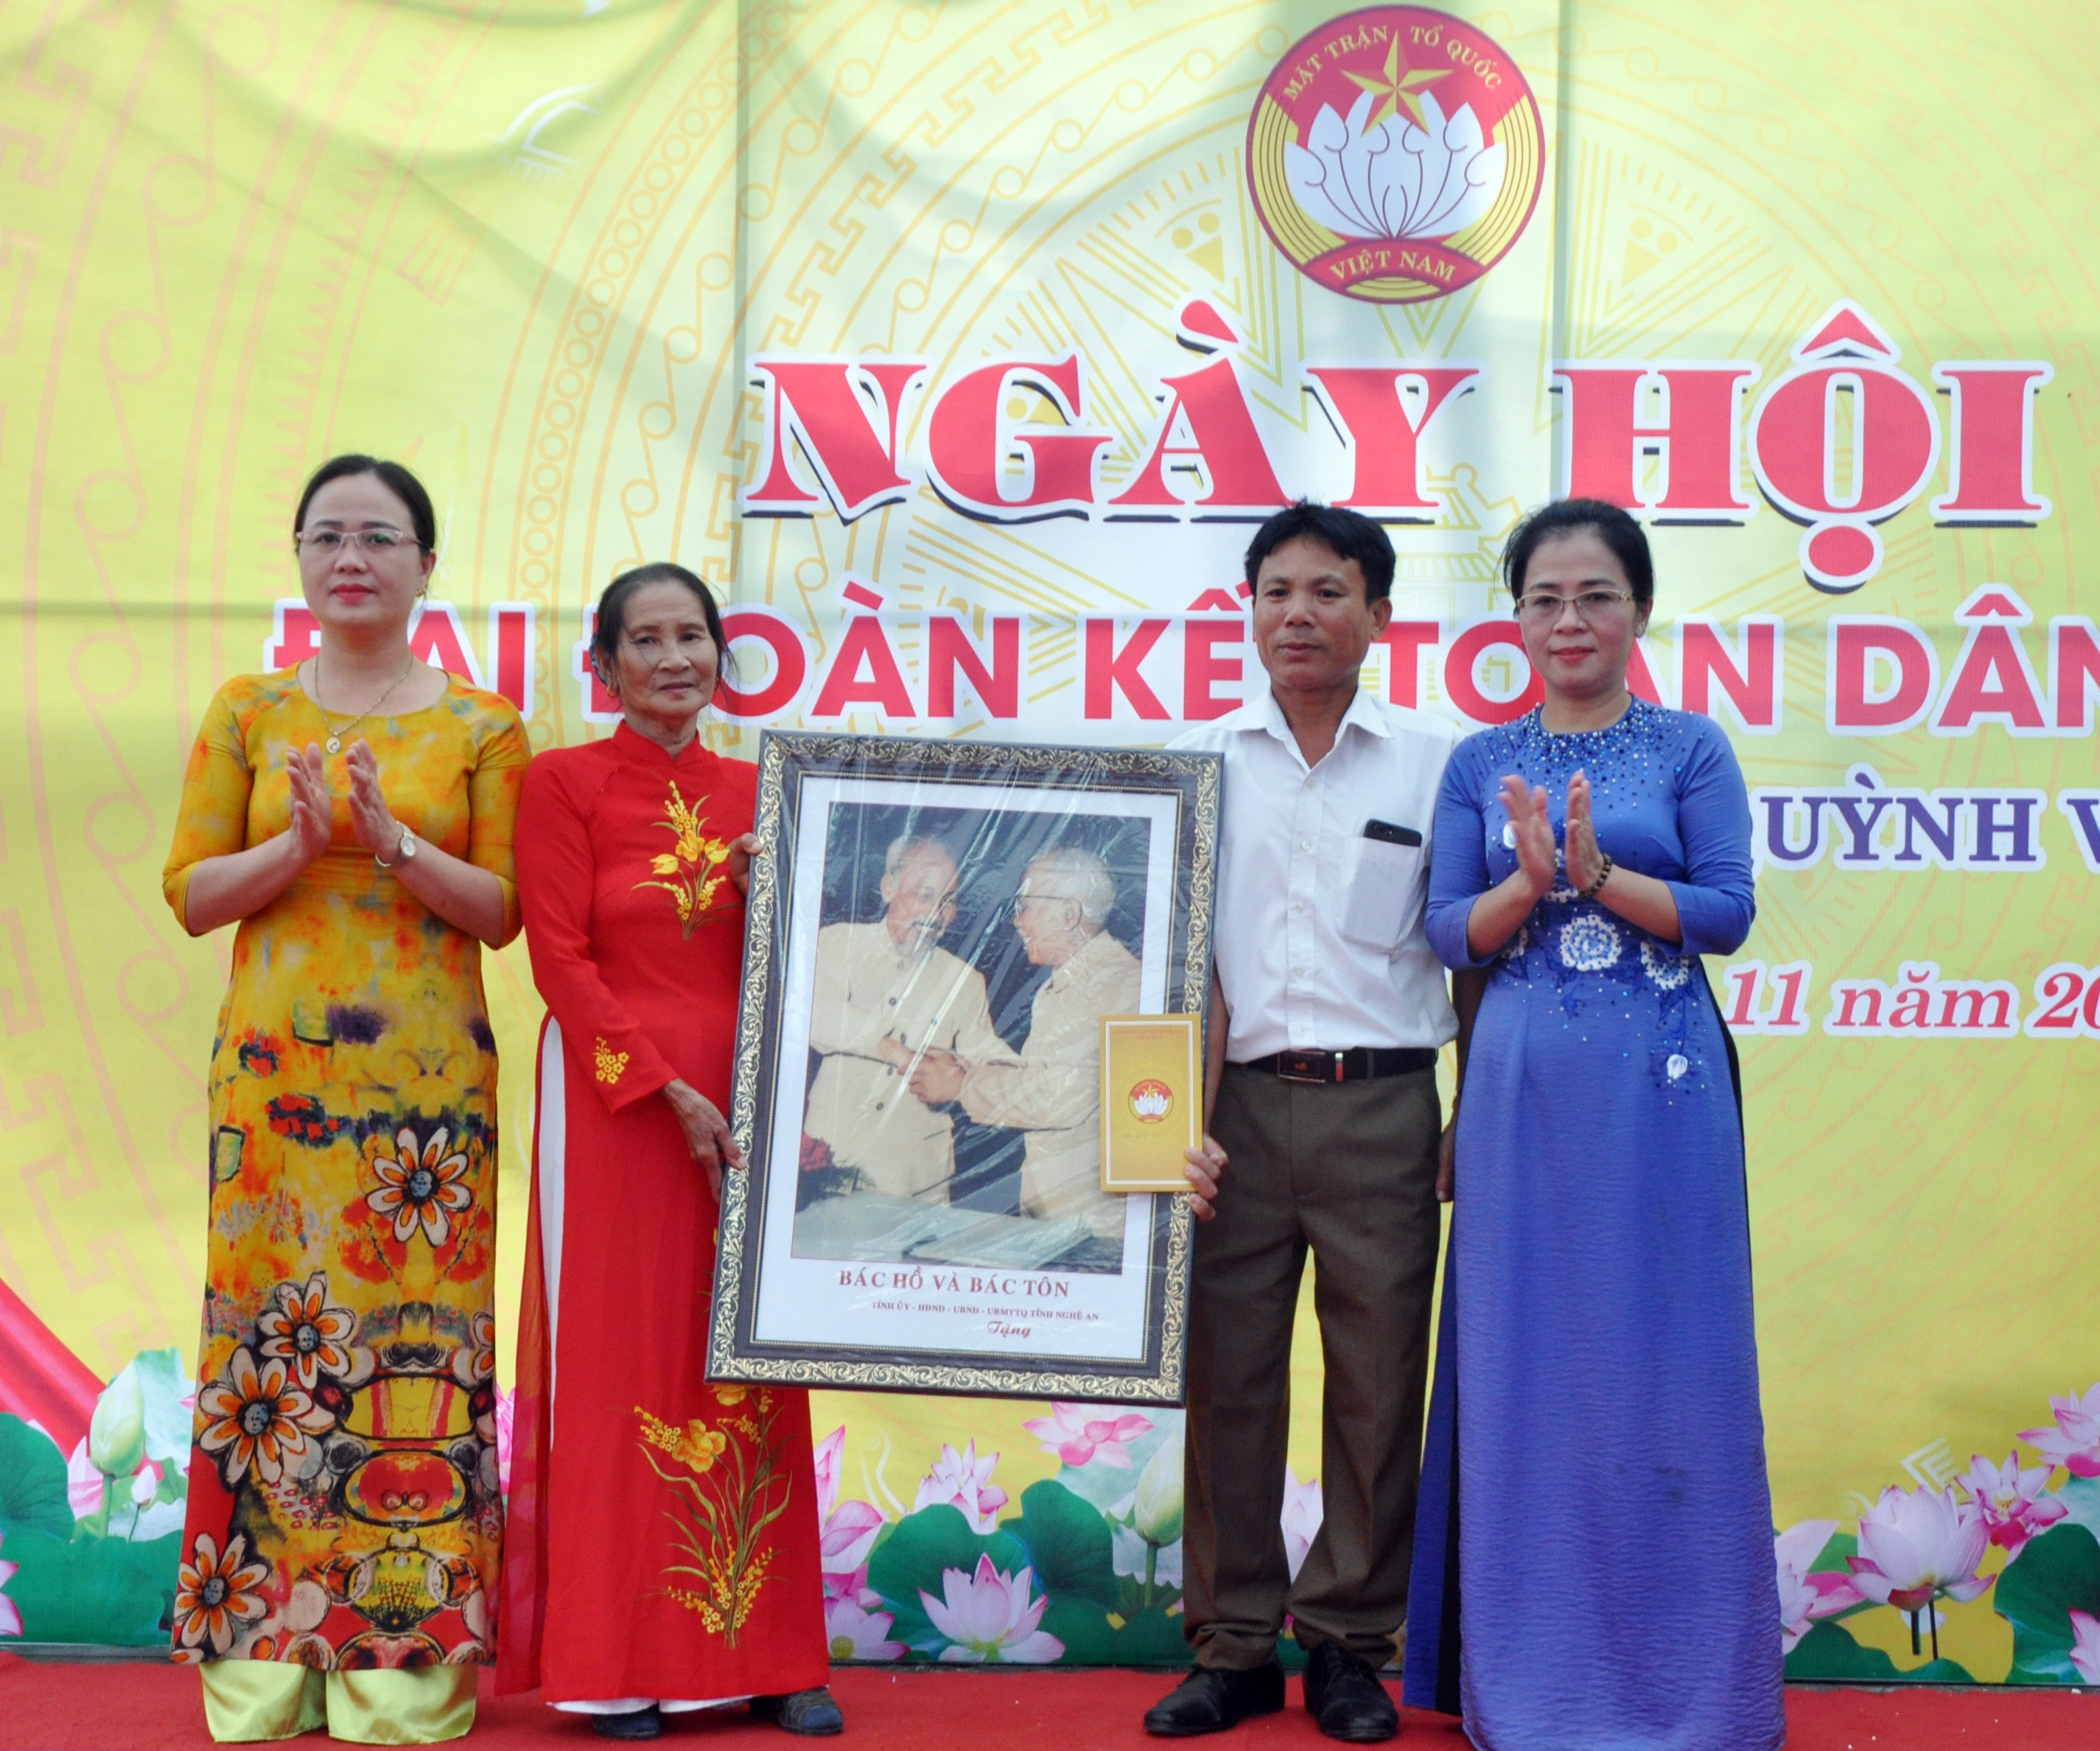 Đồng chí Võ Thị Minh Sinh trao bức ảnh “Bác Hồ với Bác Tôn” cho đại diện thôn 6.